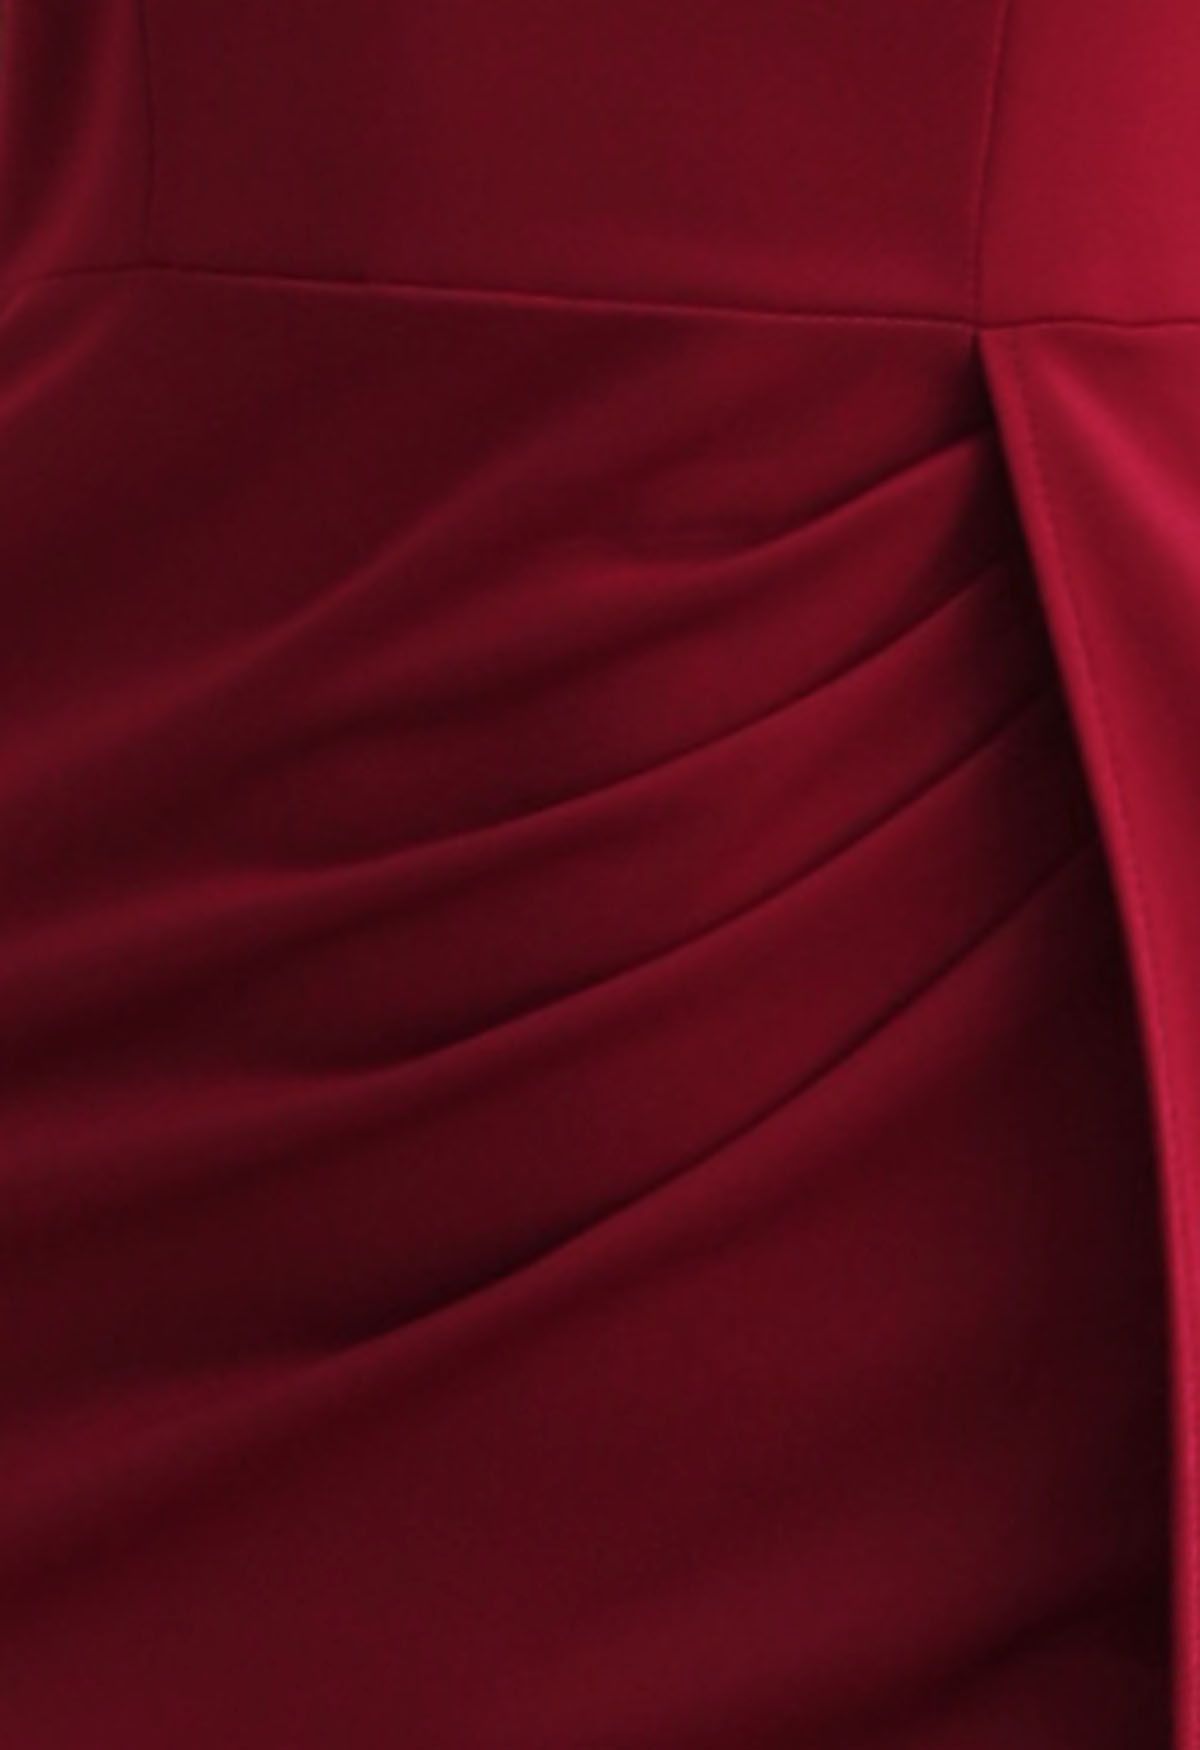 ريشة تريم واحد الكتف الشق ثوب حورية البحر باللون الأحمر